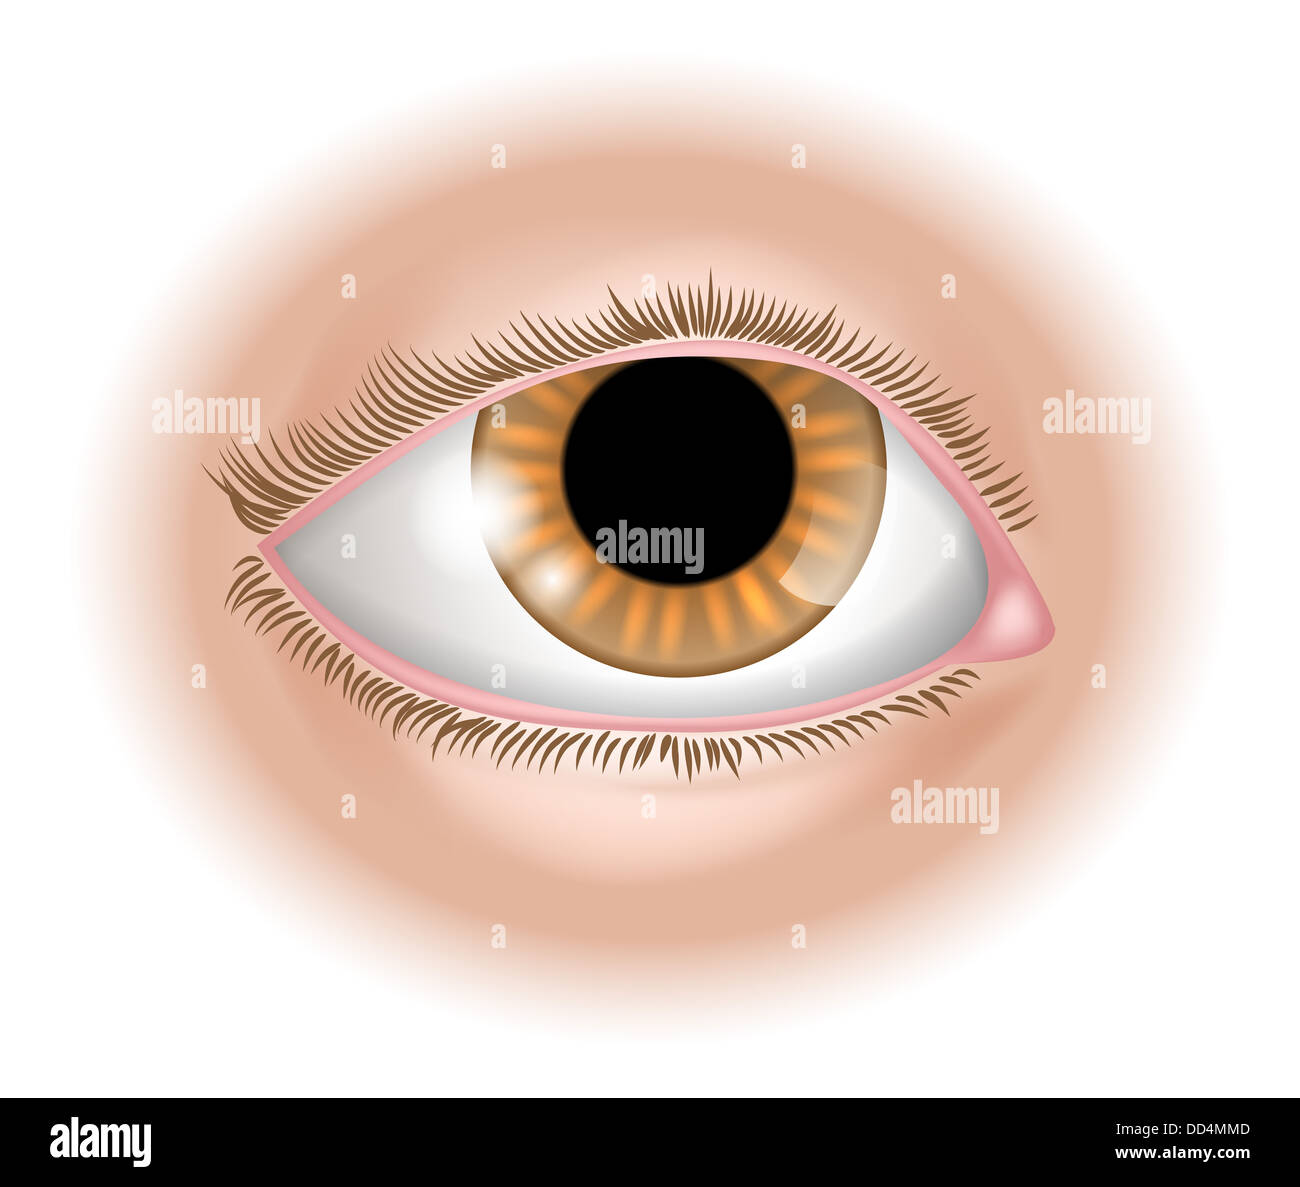 Une illustration d'une partie du corps, l'oeil humain pourrait représenter la vue dans les cinq sens Banque D'Images